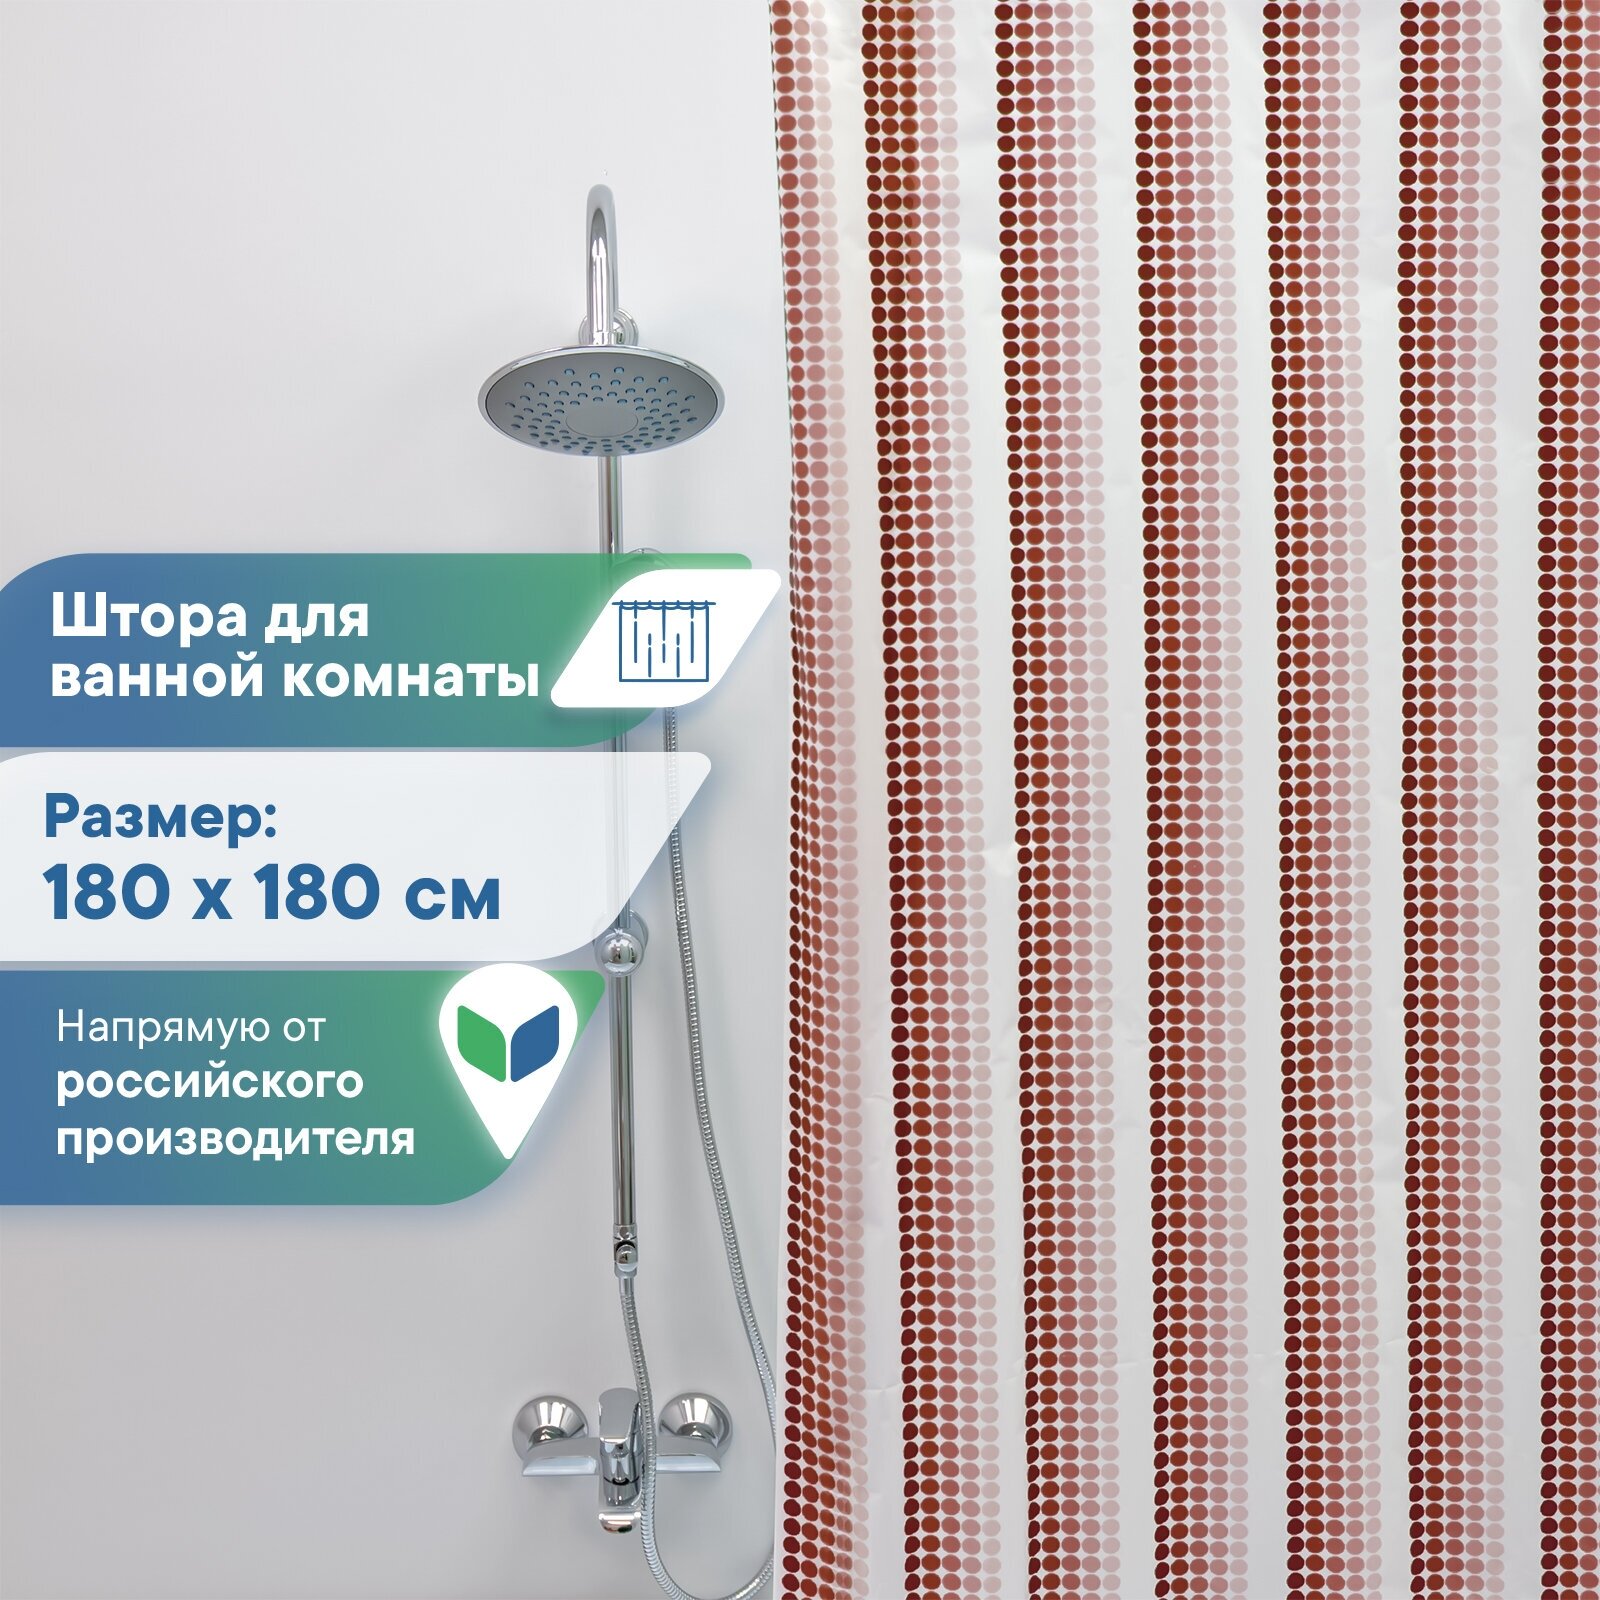 Штора для ванной комнаты VILINA водонепроницаемая с рисунком занавес с кольцами 180х180 см Ритм бордовая